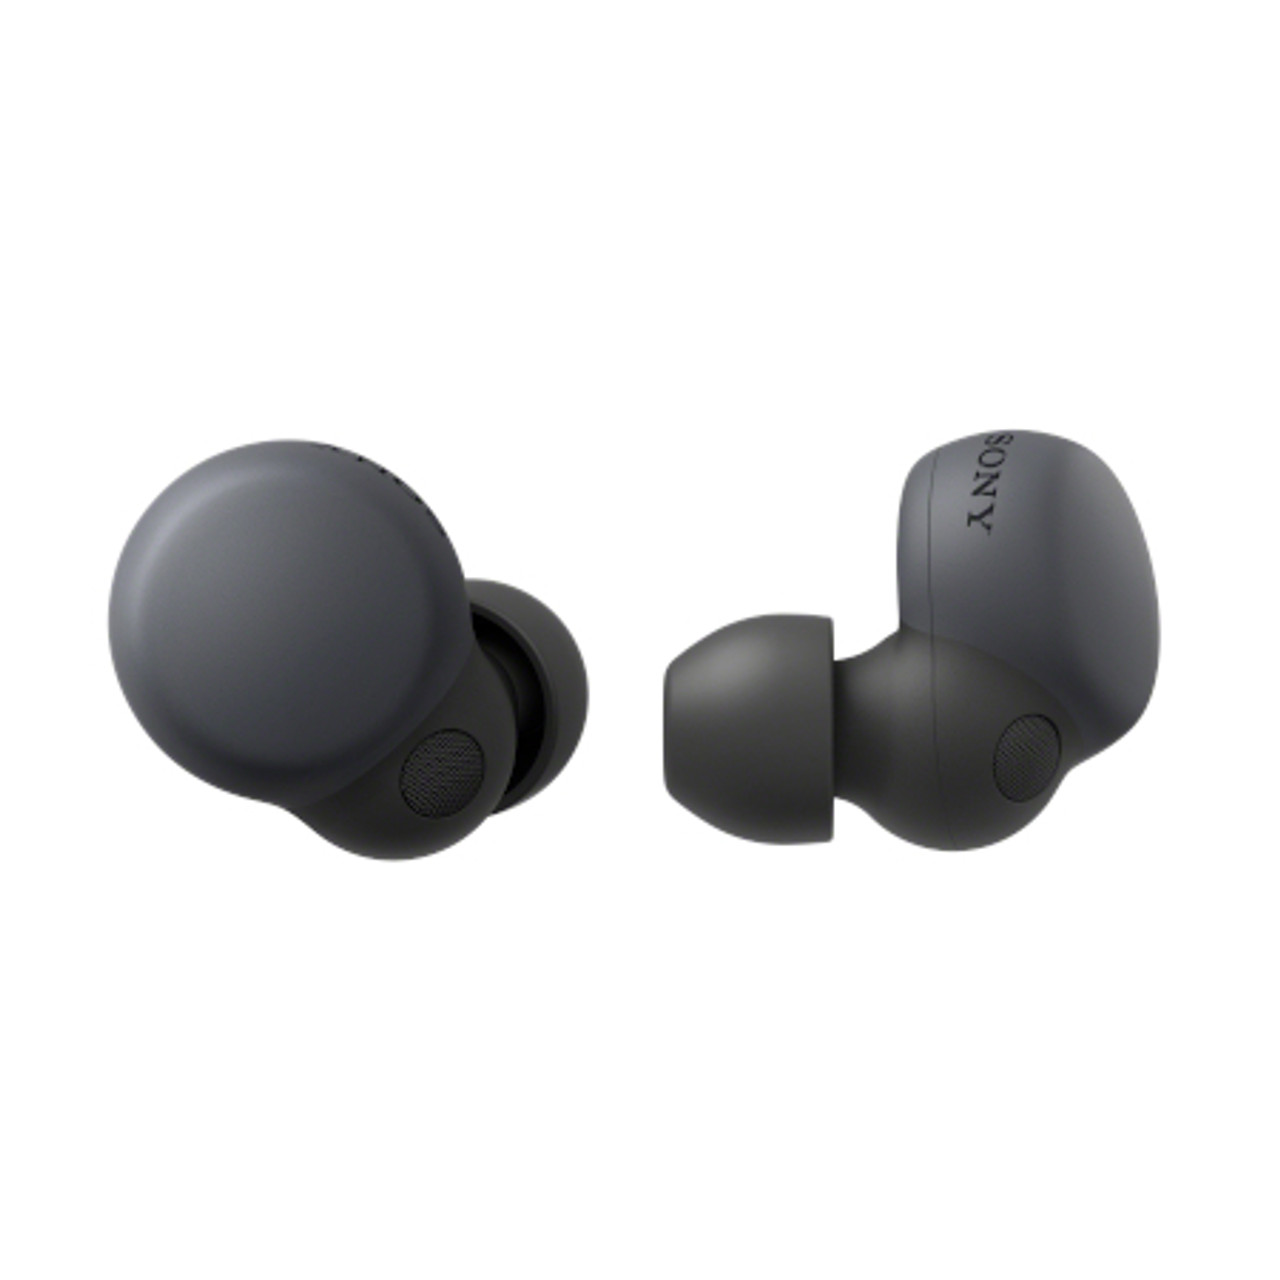 Sony LinkBuds S True Wireless Bluetooth Noise Canceling Earbuds - Black  (Renewed)